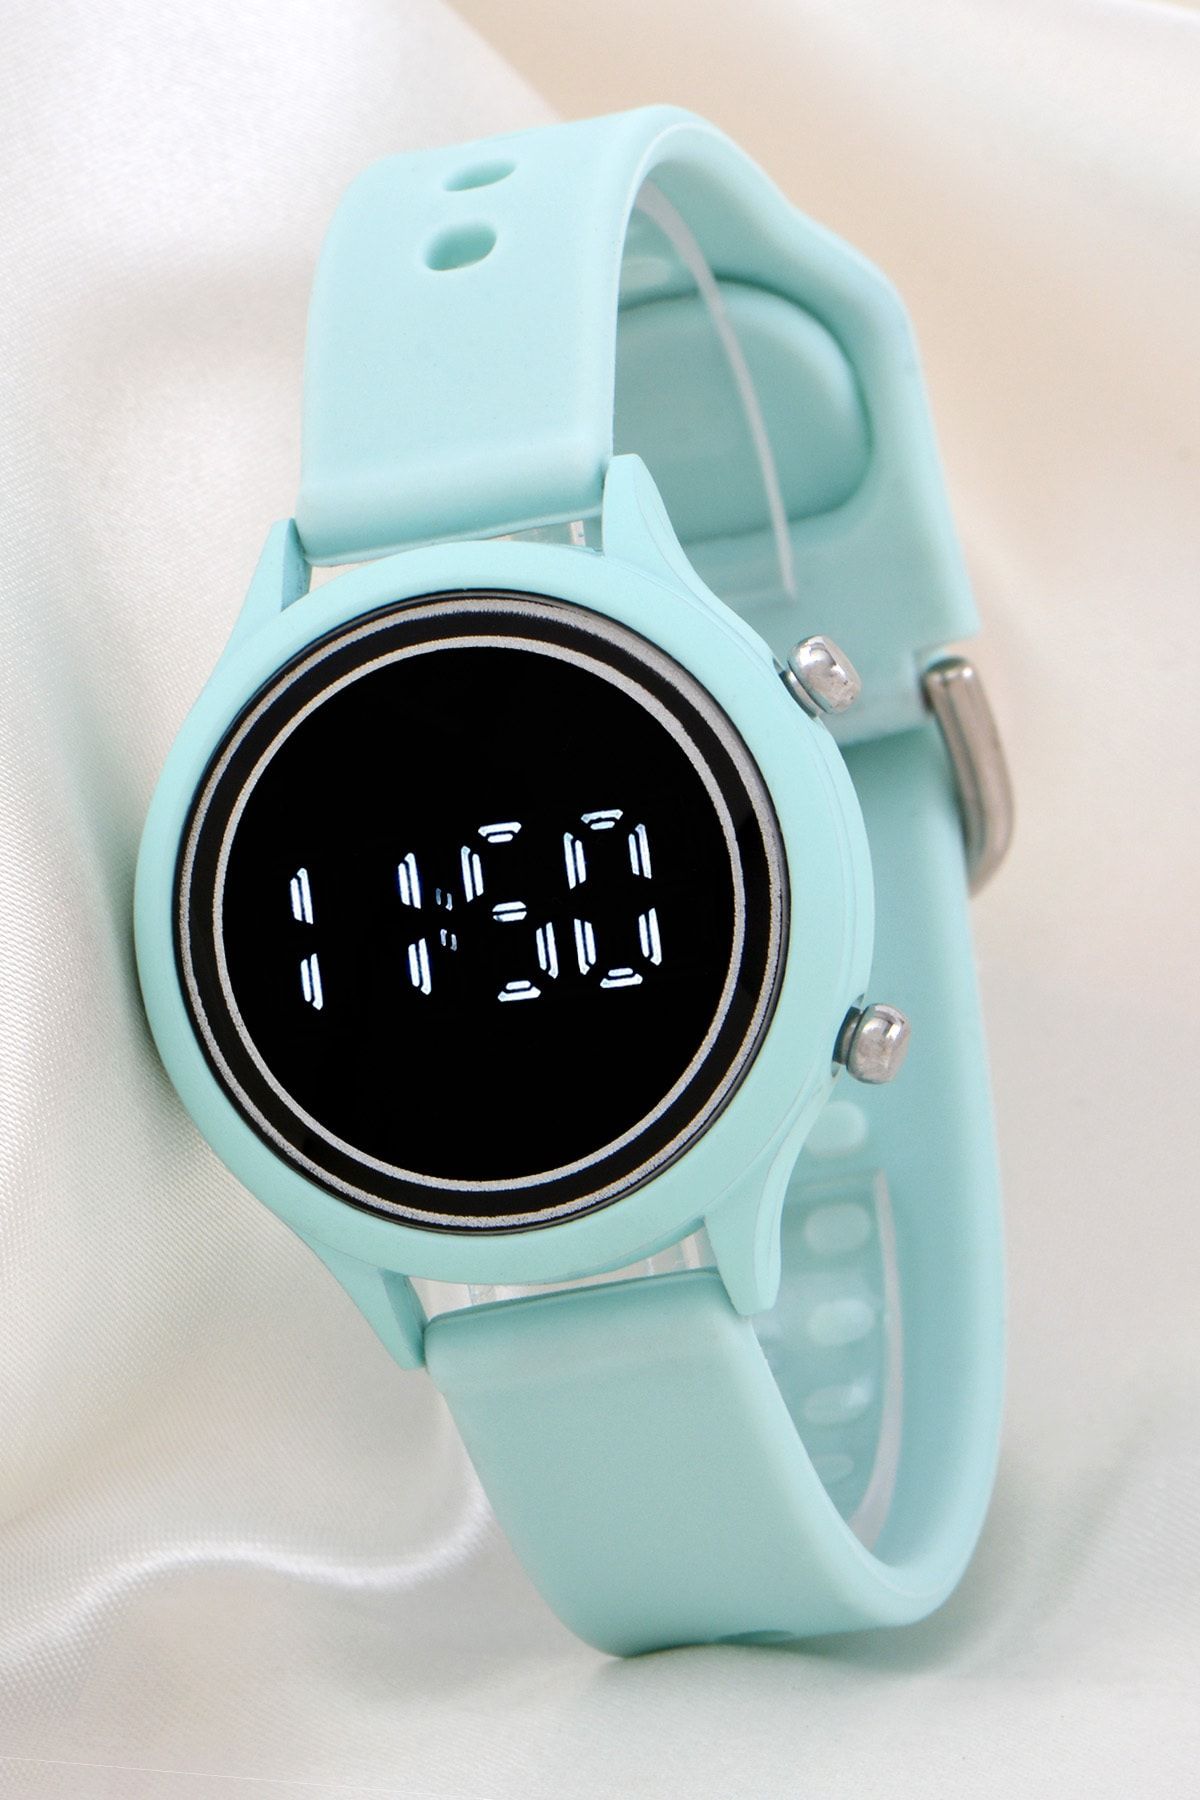 Saattino Unisex Tuşlu Led Takvimli Silikon Kadın Kol Saati - Silikon Bileklik Saat St-304167